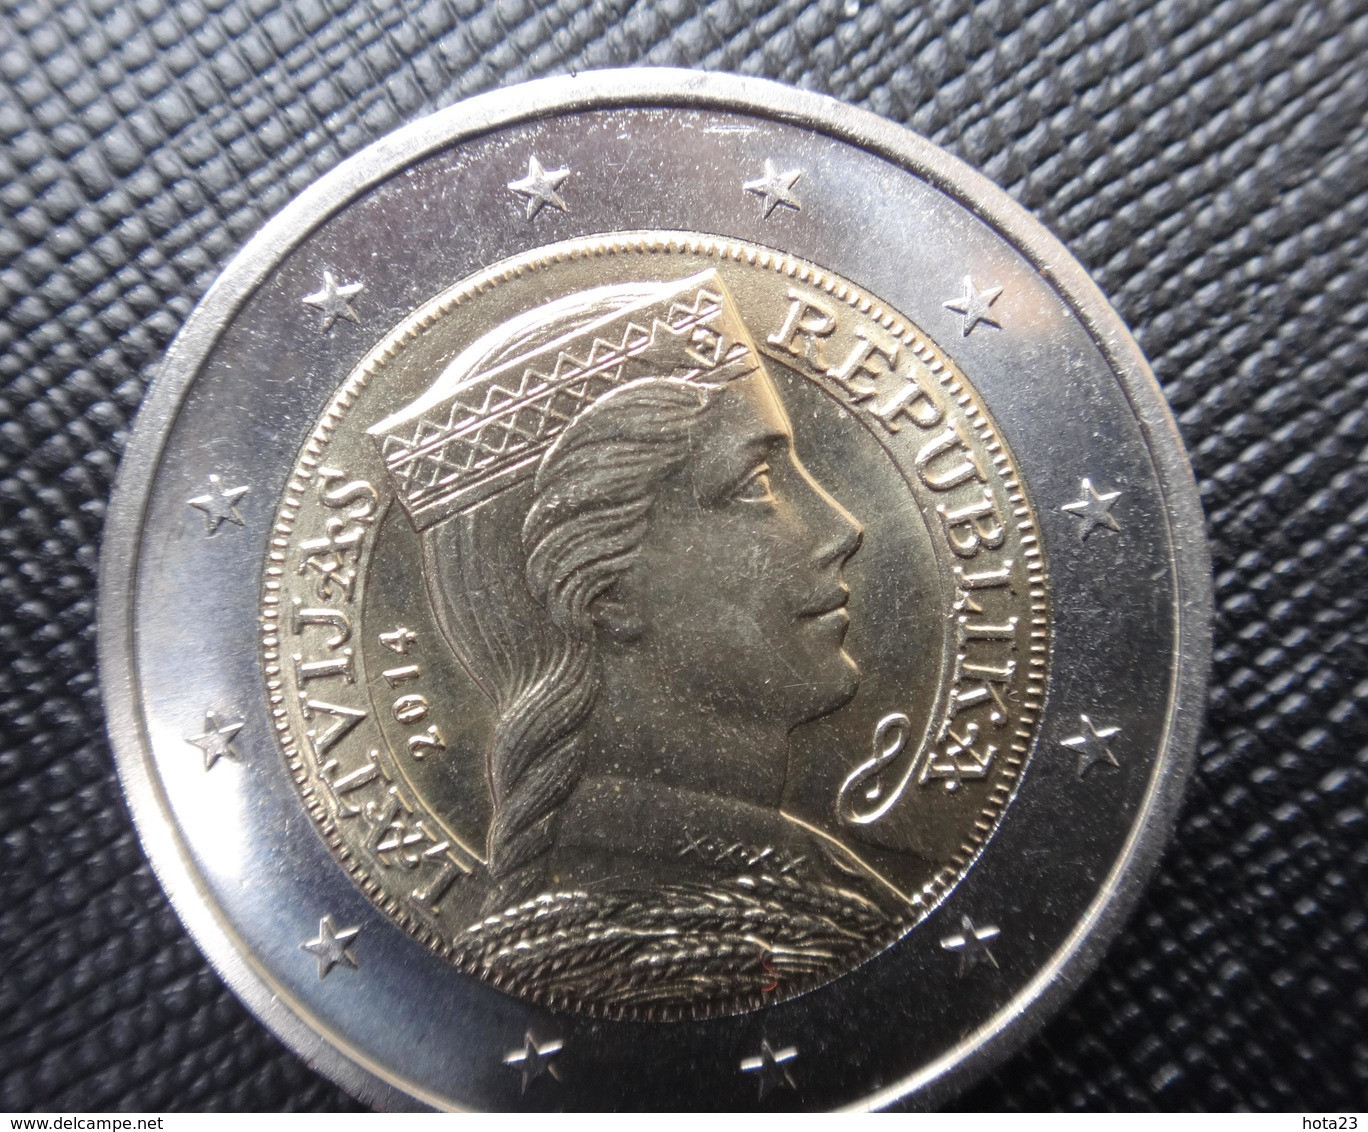 LETTLAND 2 EURO Kursmünze MÜNZEN 2014 Jahre LATVIA COIN  CIRCULATED - Lettland